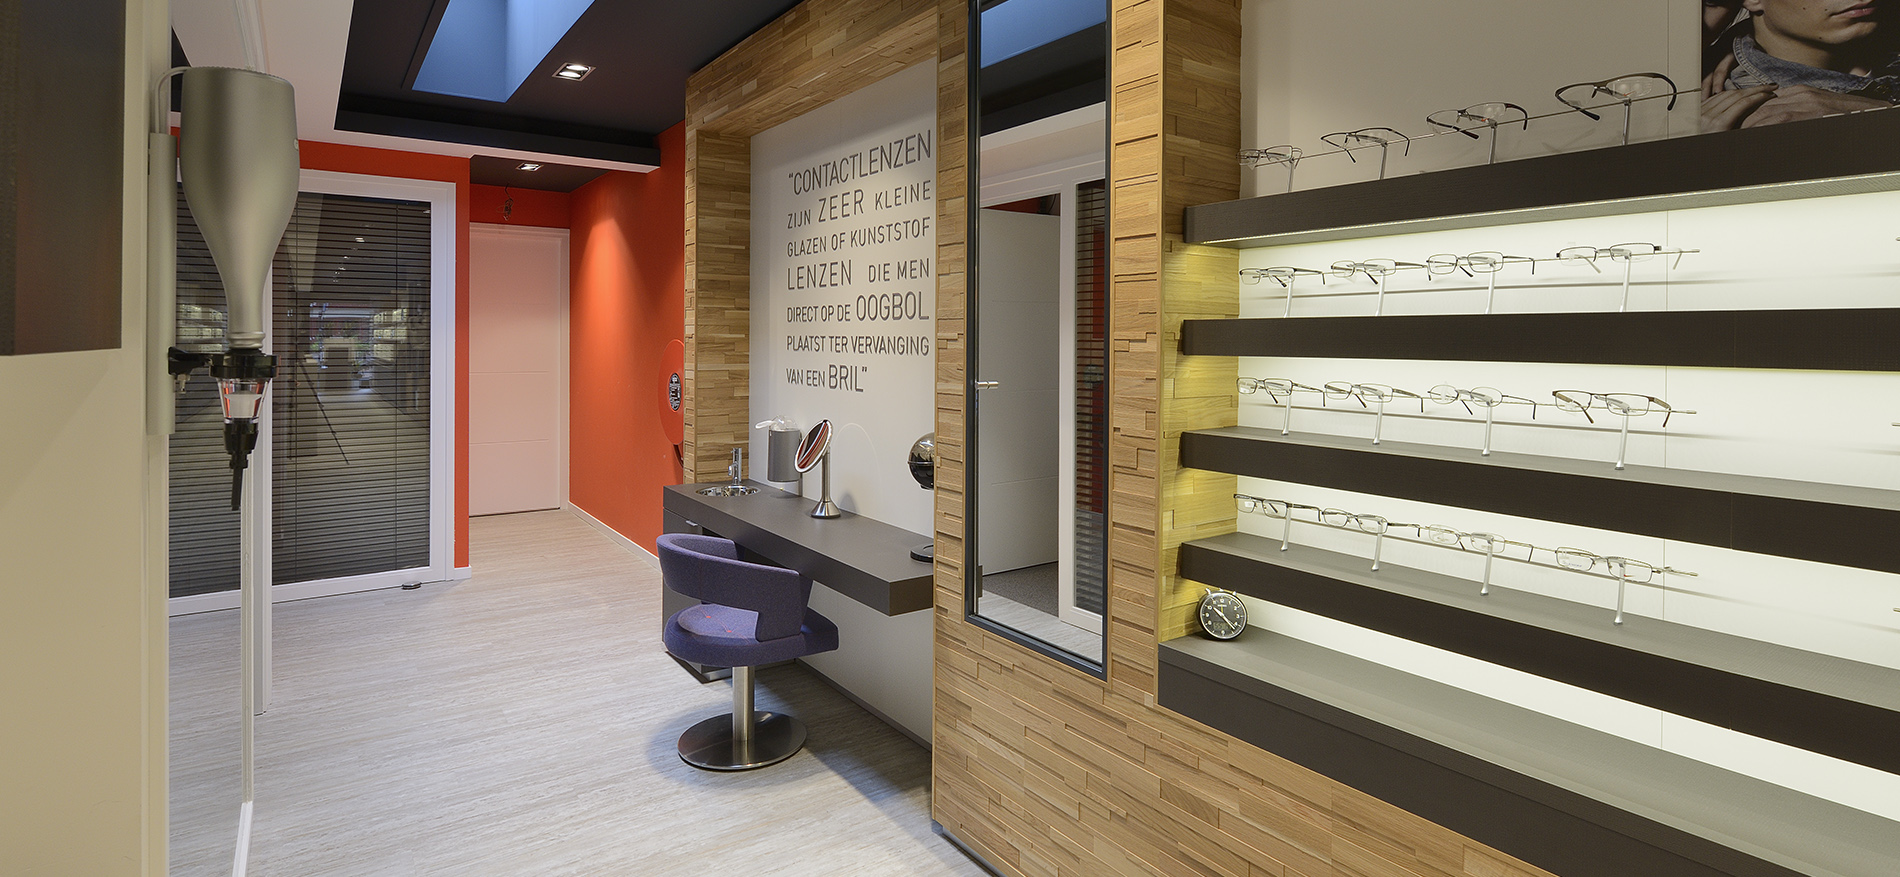 Eyefasion Zeist: Design interior concept - 